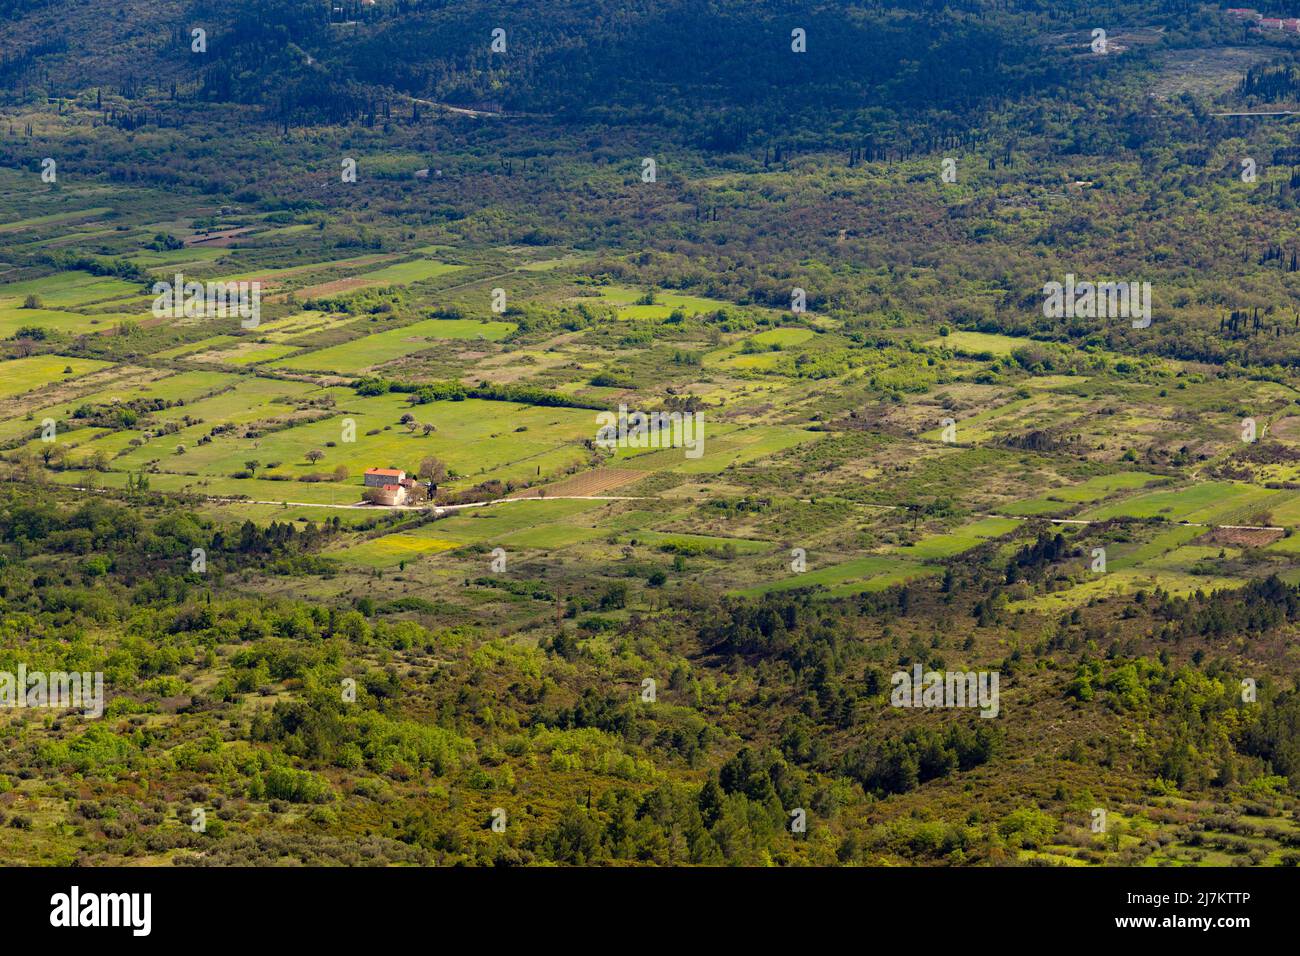 Fields and villages in Konavle region near Dubrovnik. Bird's-eye shot. Stock Photo